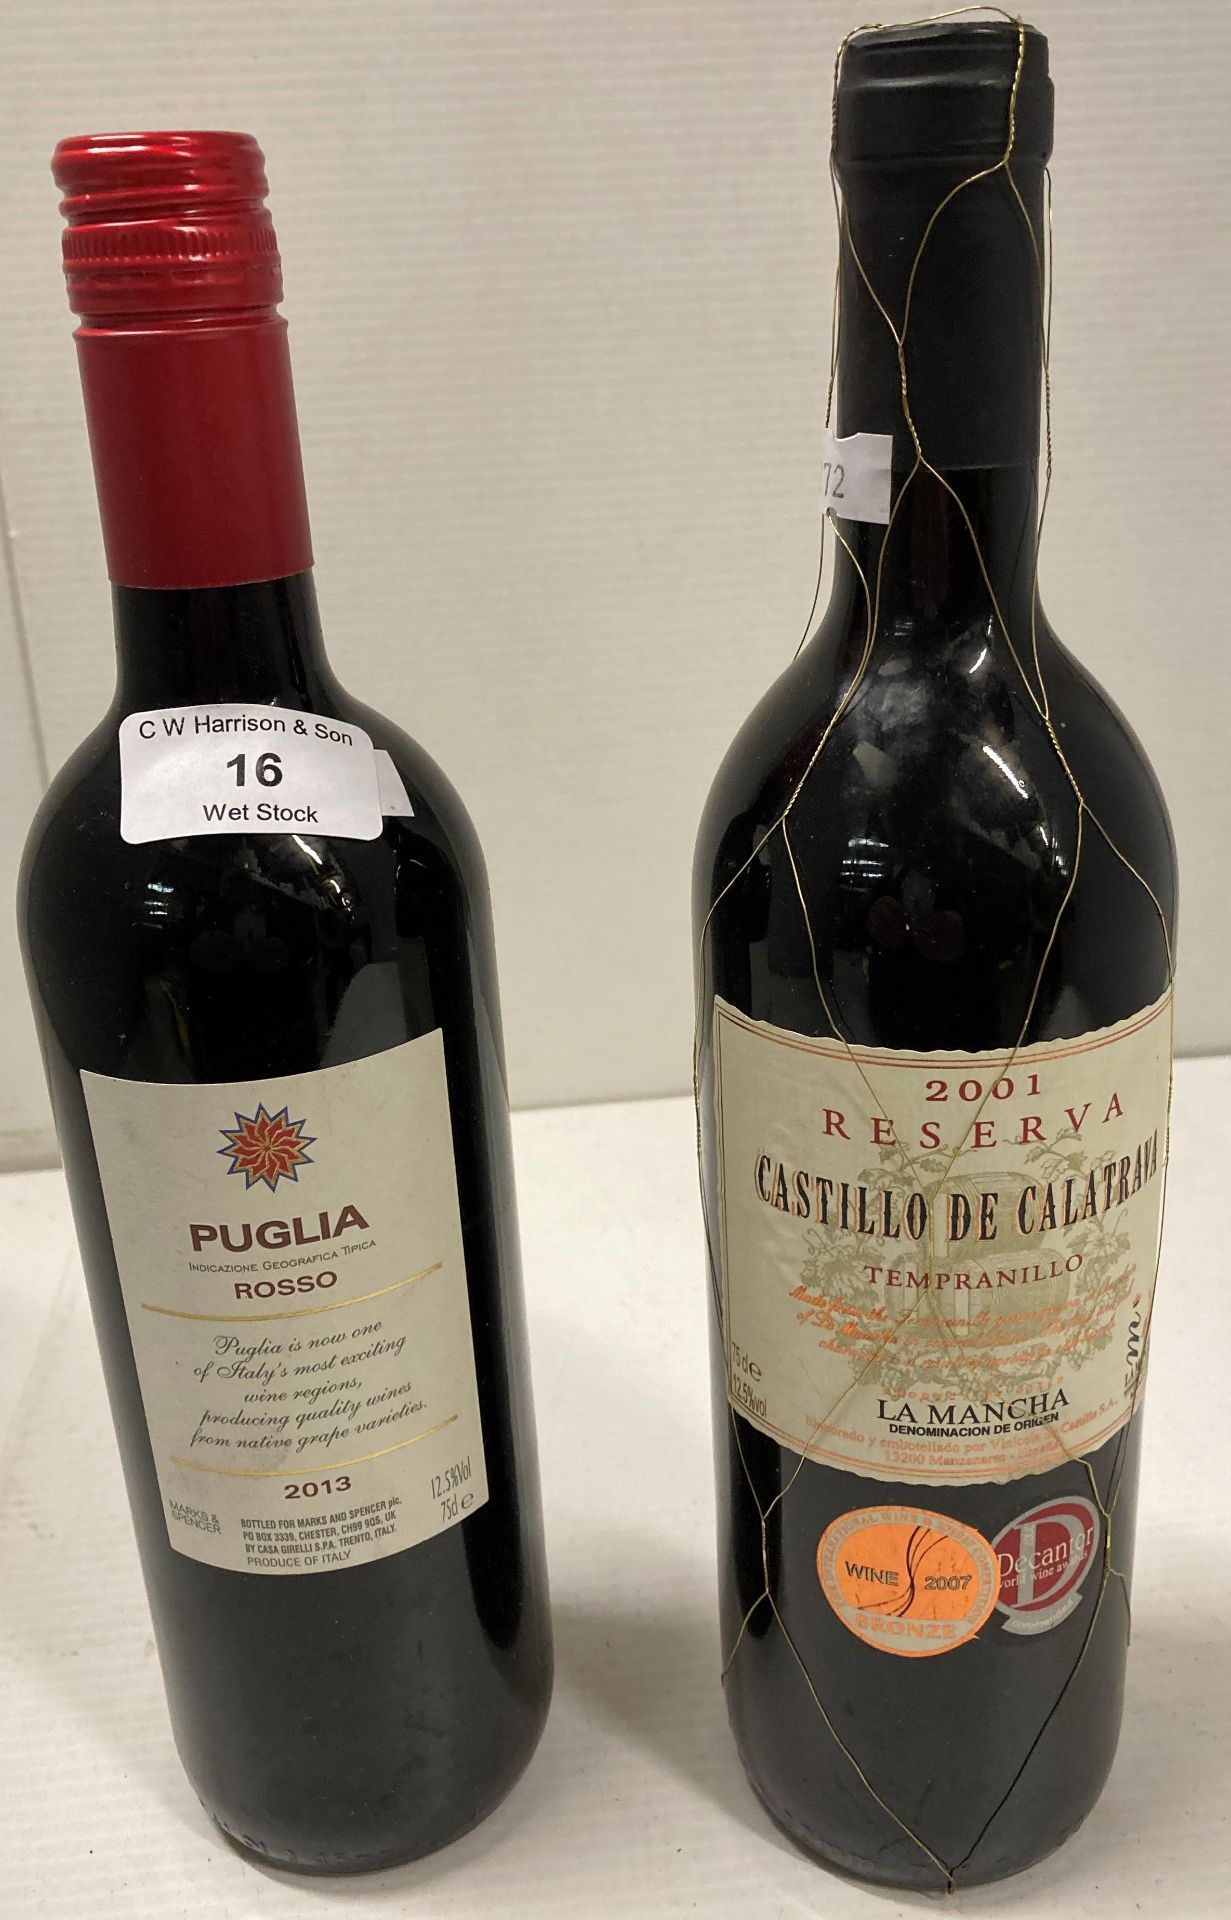 1 x 75cl bottle of Puglia Rosso and 1 x bottle of 75cl Castillo De Calatrava 2001 Resvera